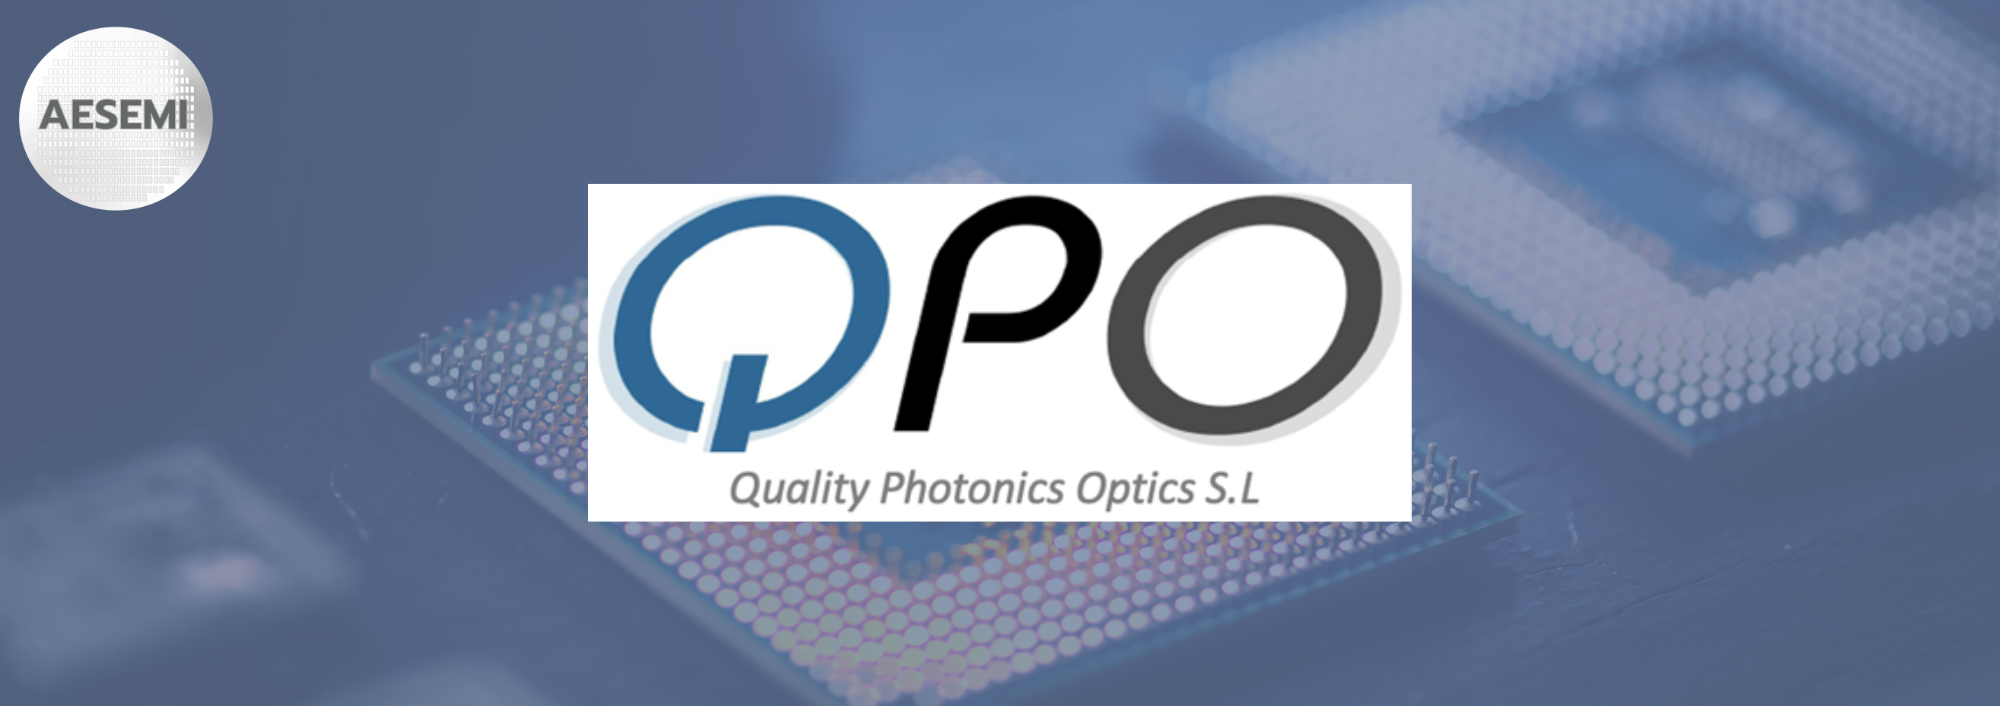 Quality Photonics Optics QPO